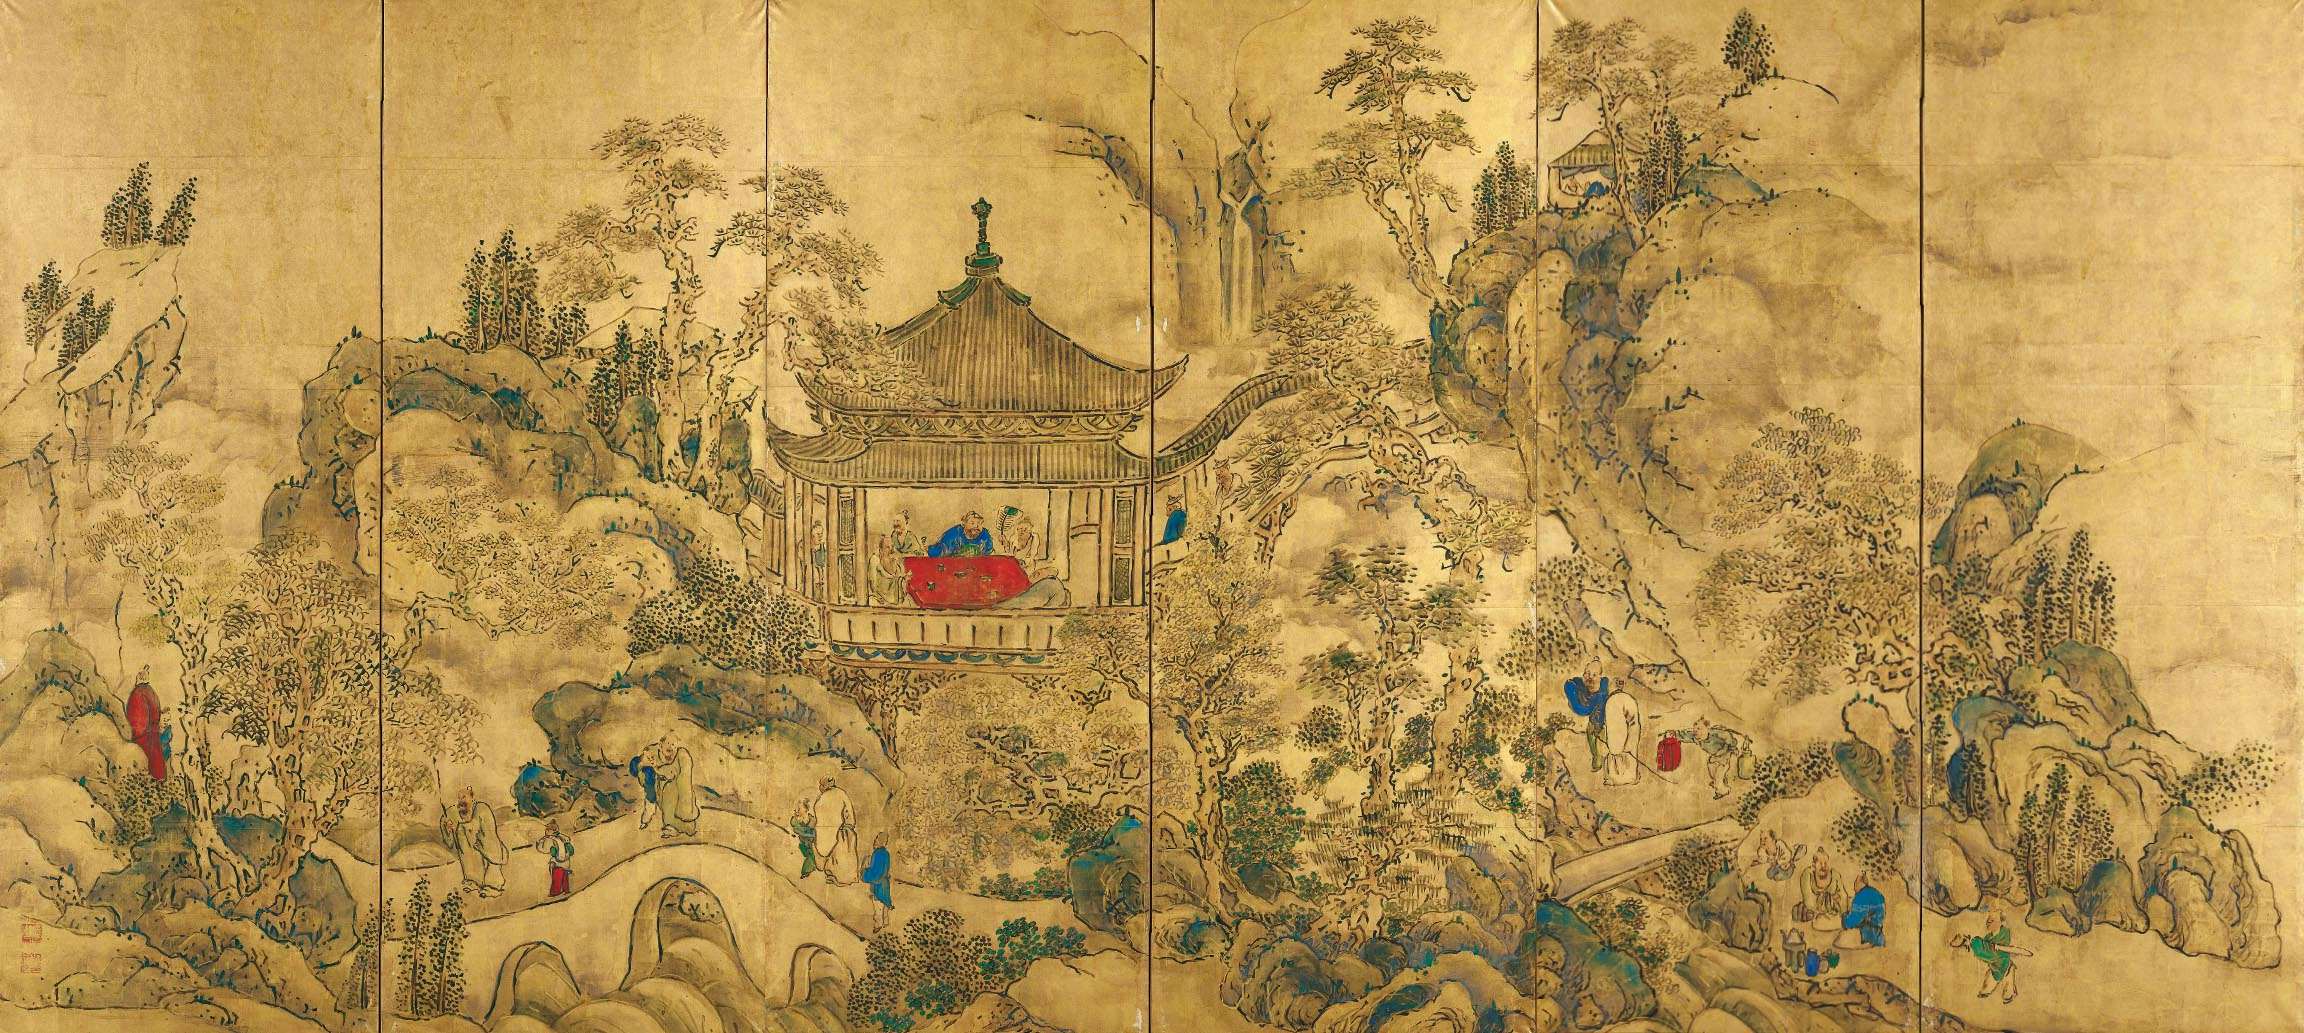 応挙、若冲に並ぶ江戸中期京都画壇の巨匠・池大雅の85年ぶりの大